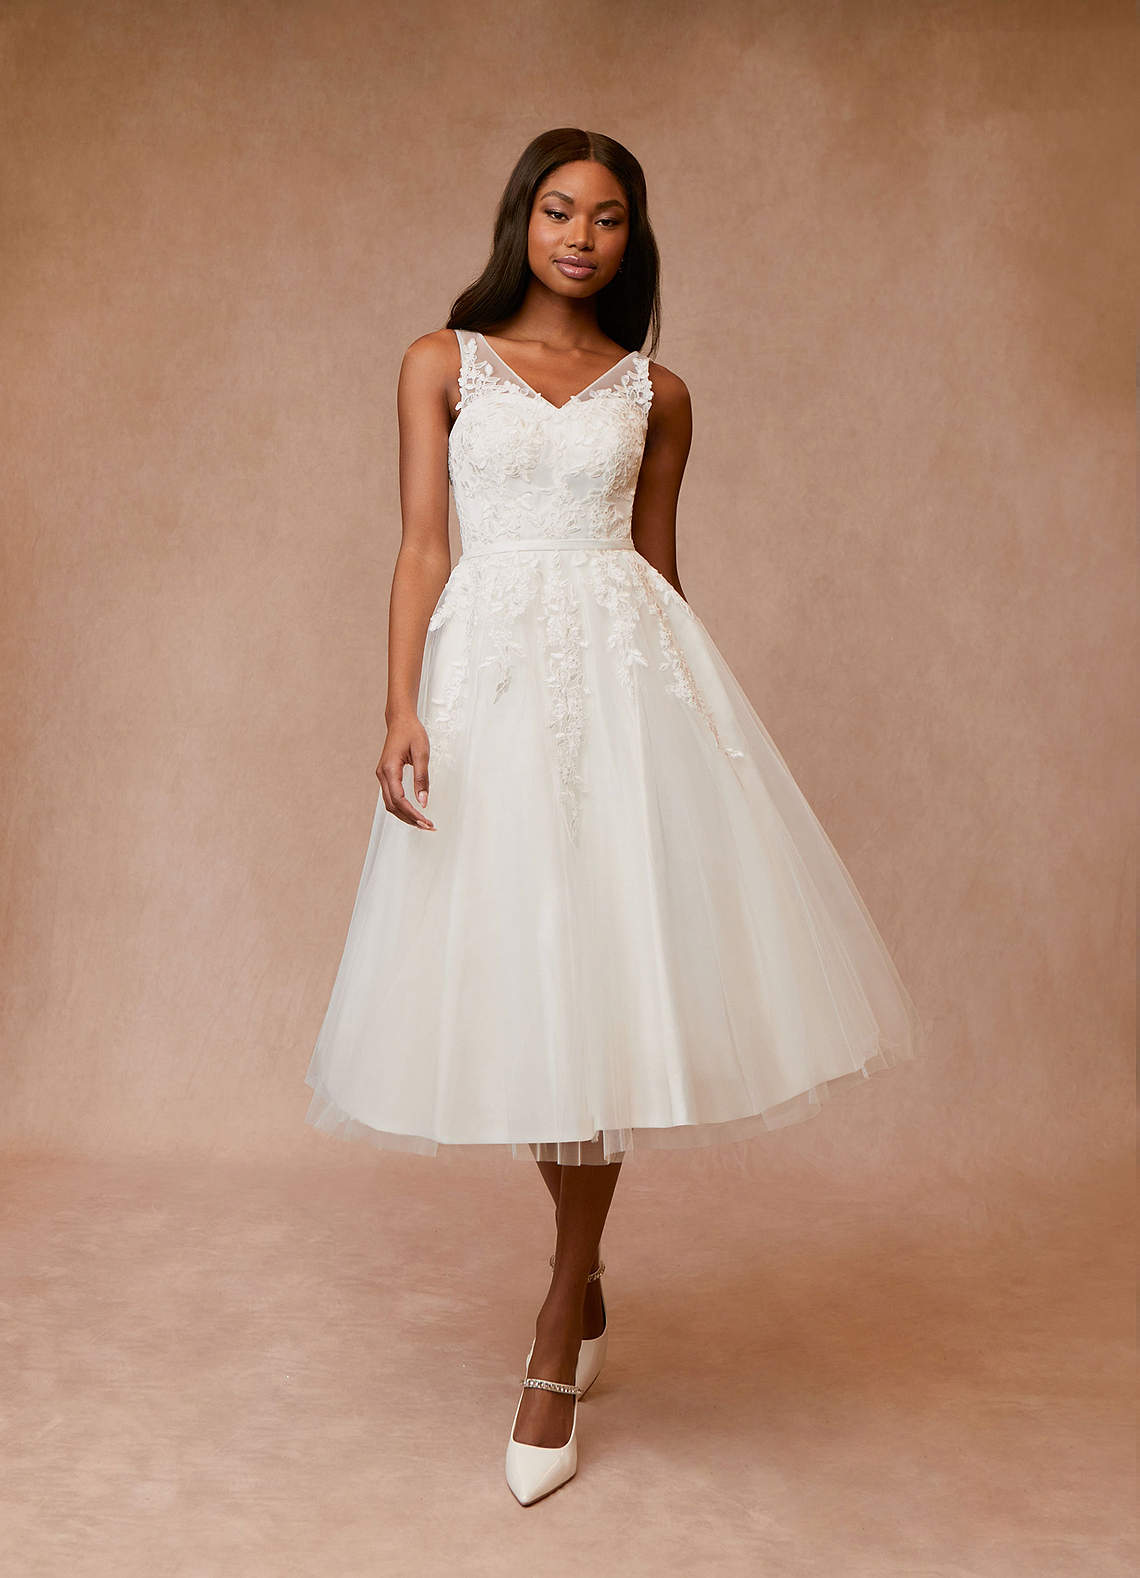 Baby Doll Wedding Dresses & Gowns | Online Bridal Shop – Olivia Bottega